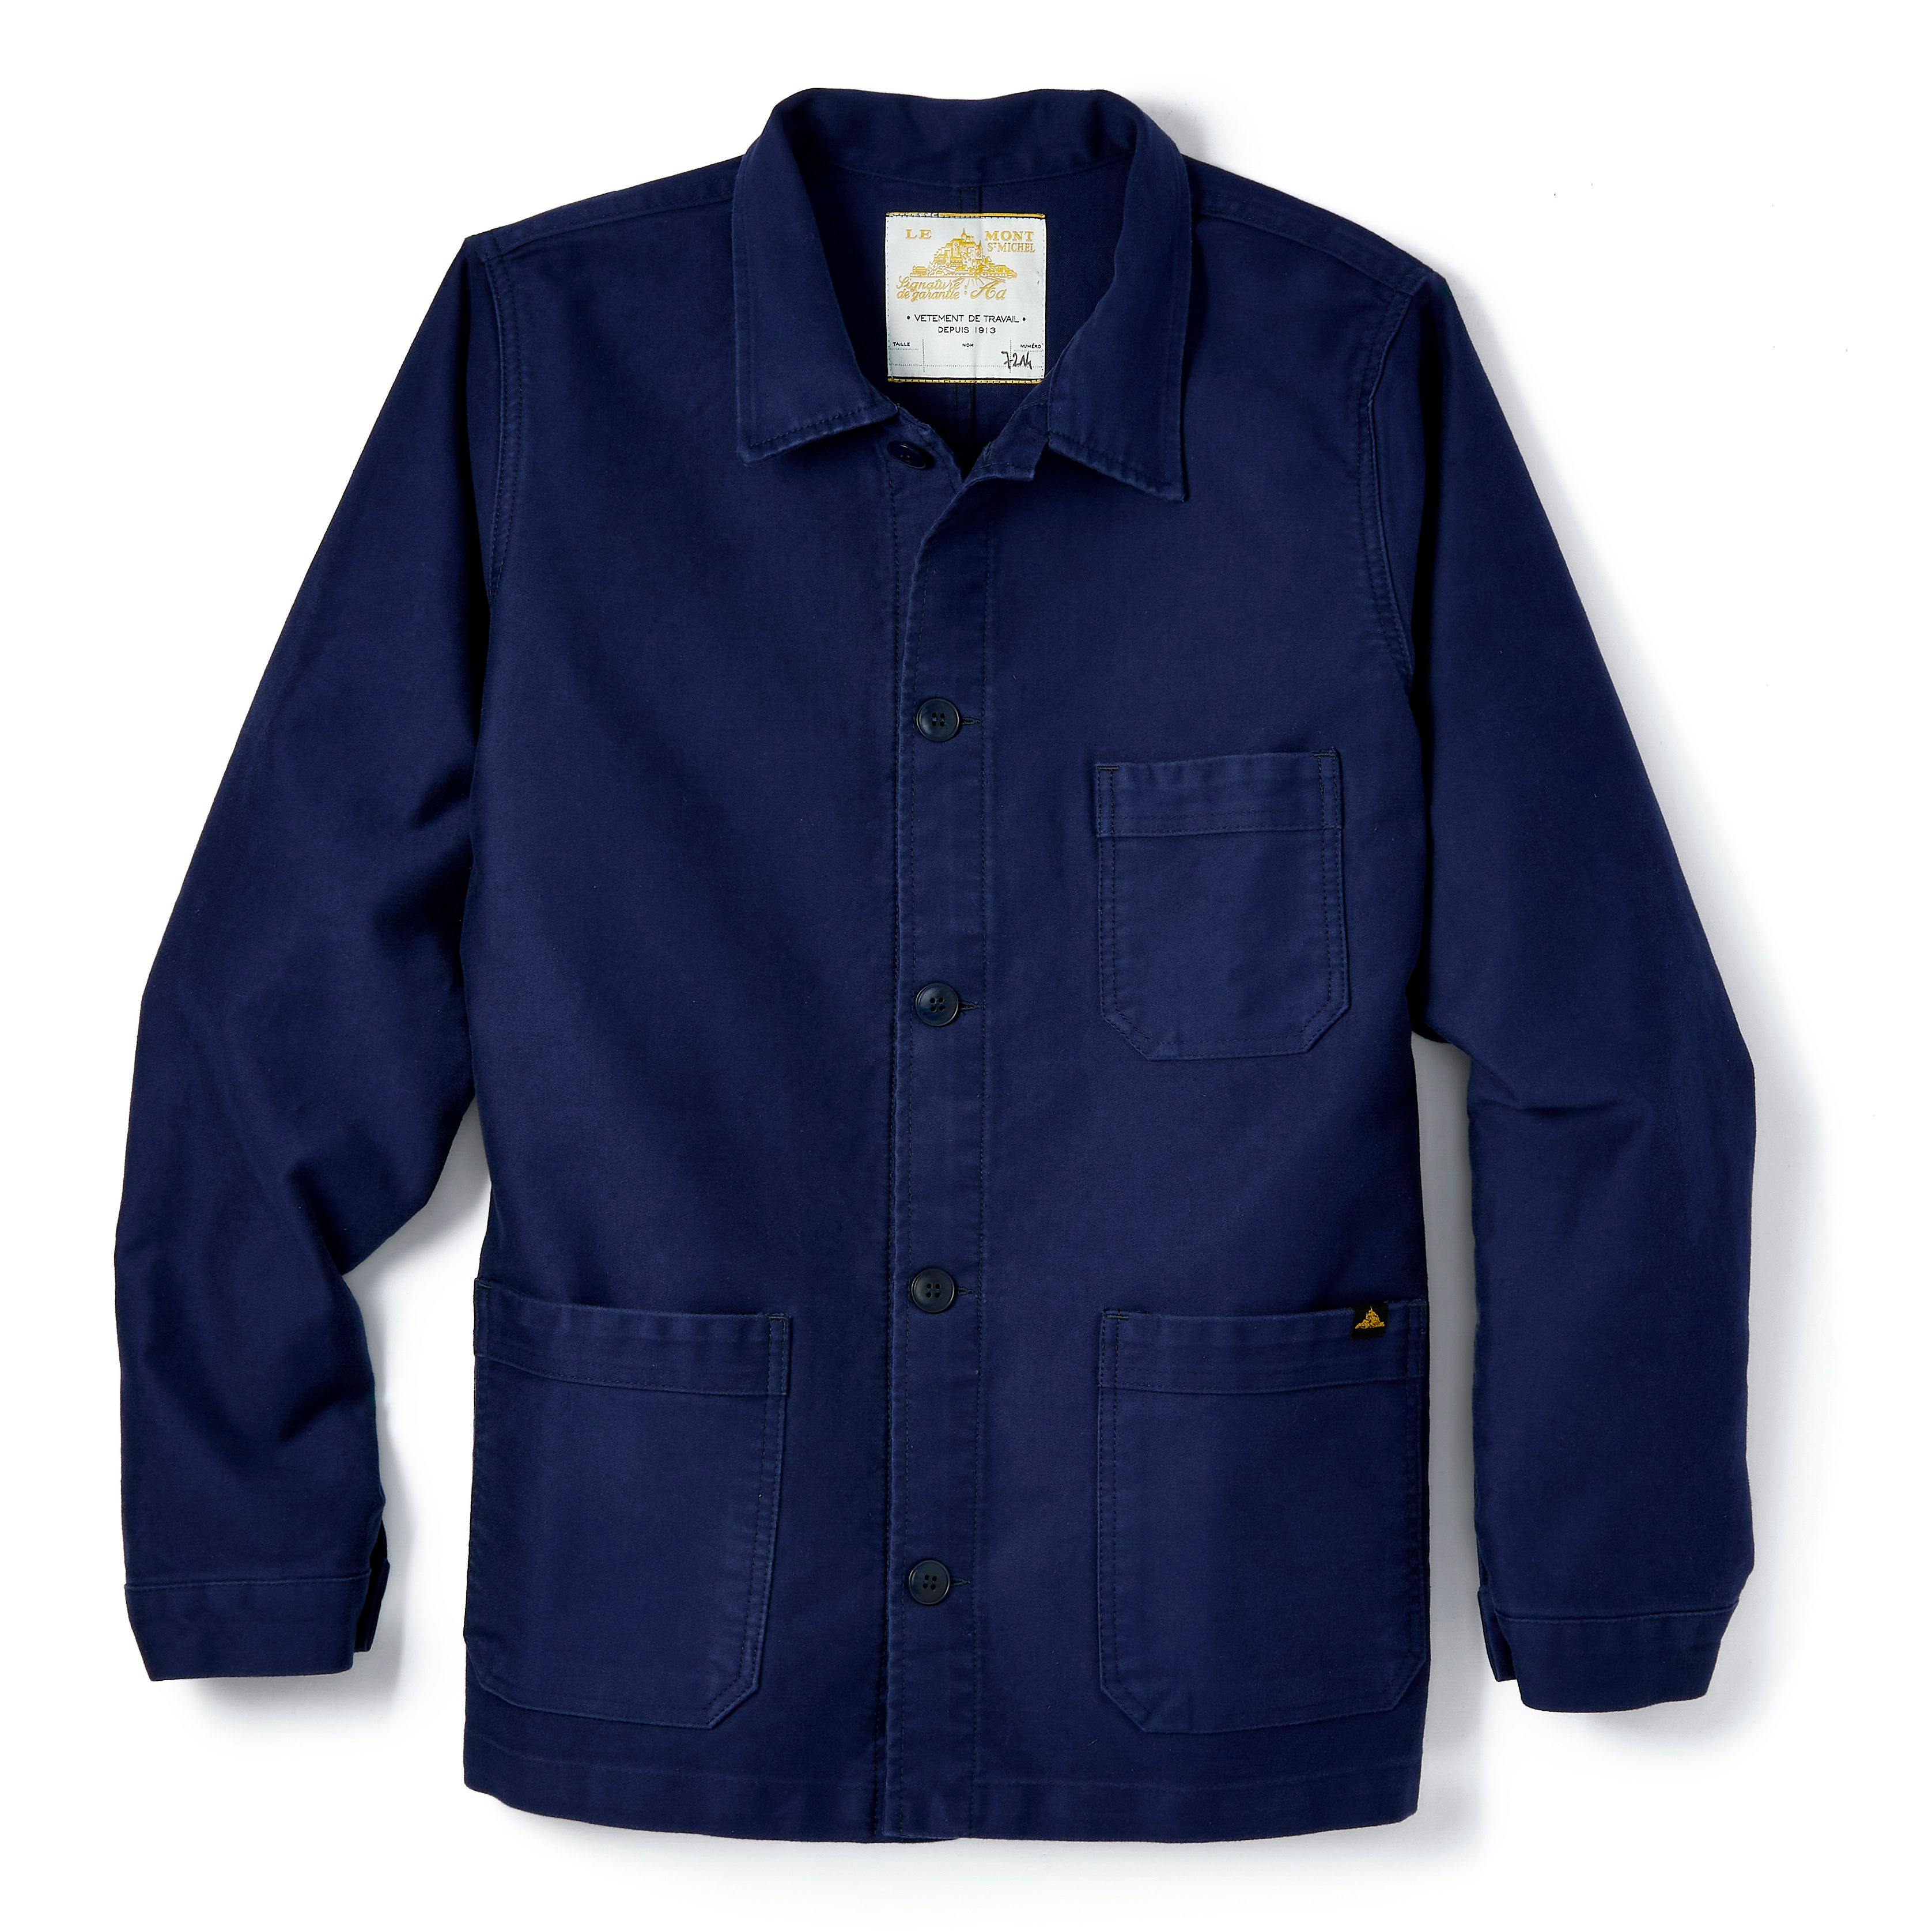 1930s Men’s Coat and Jacket Styles French Moleskin Work Jacket $275.00 AT vintagedancer.com